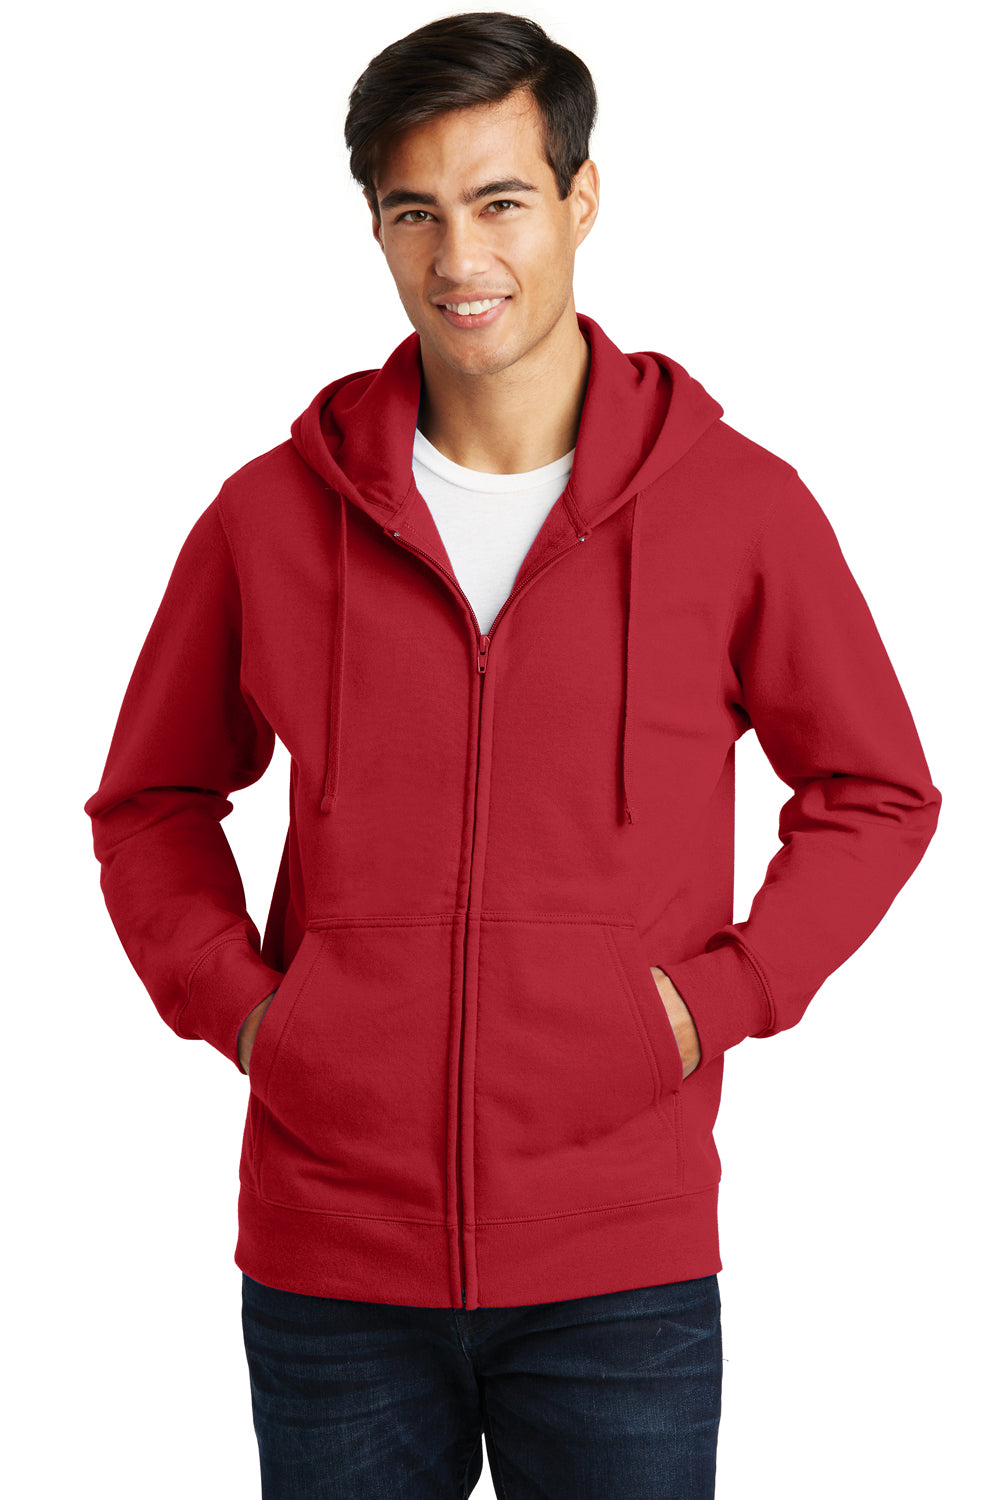 Port & Company PC850ZH Mens Fan Favorite Fleece Full Zip Hooded Sweatshirt Hoodie Cardinal Red Front